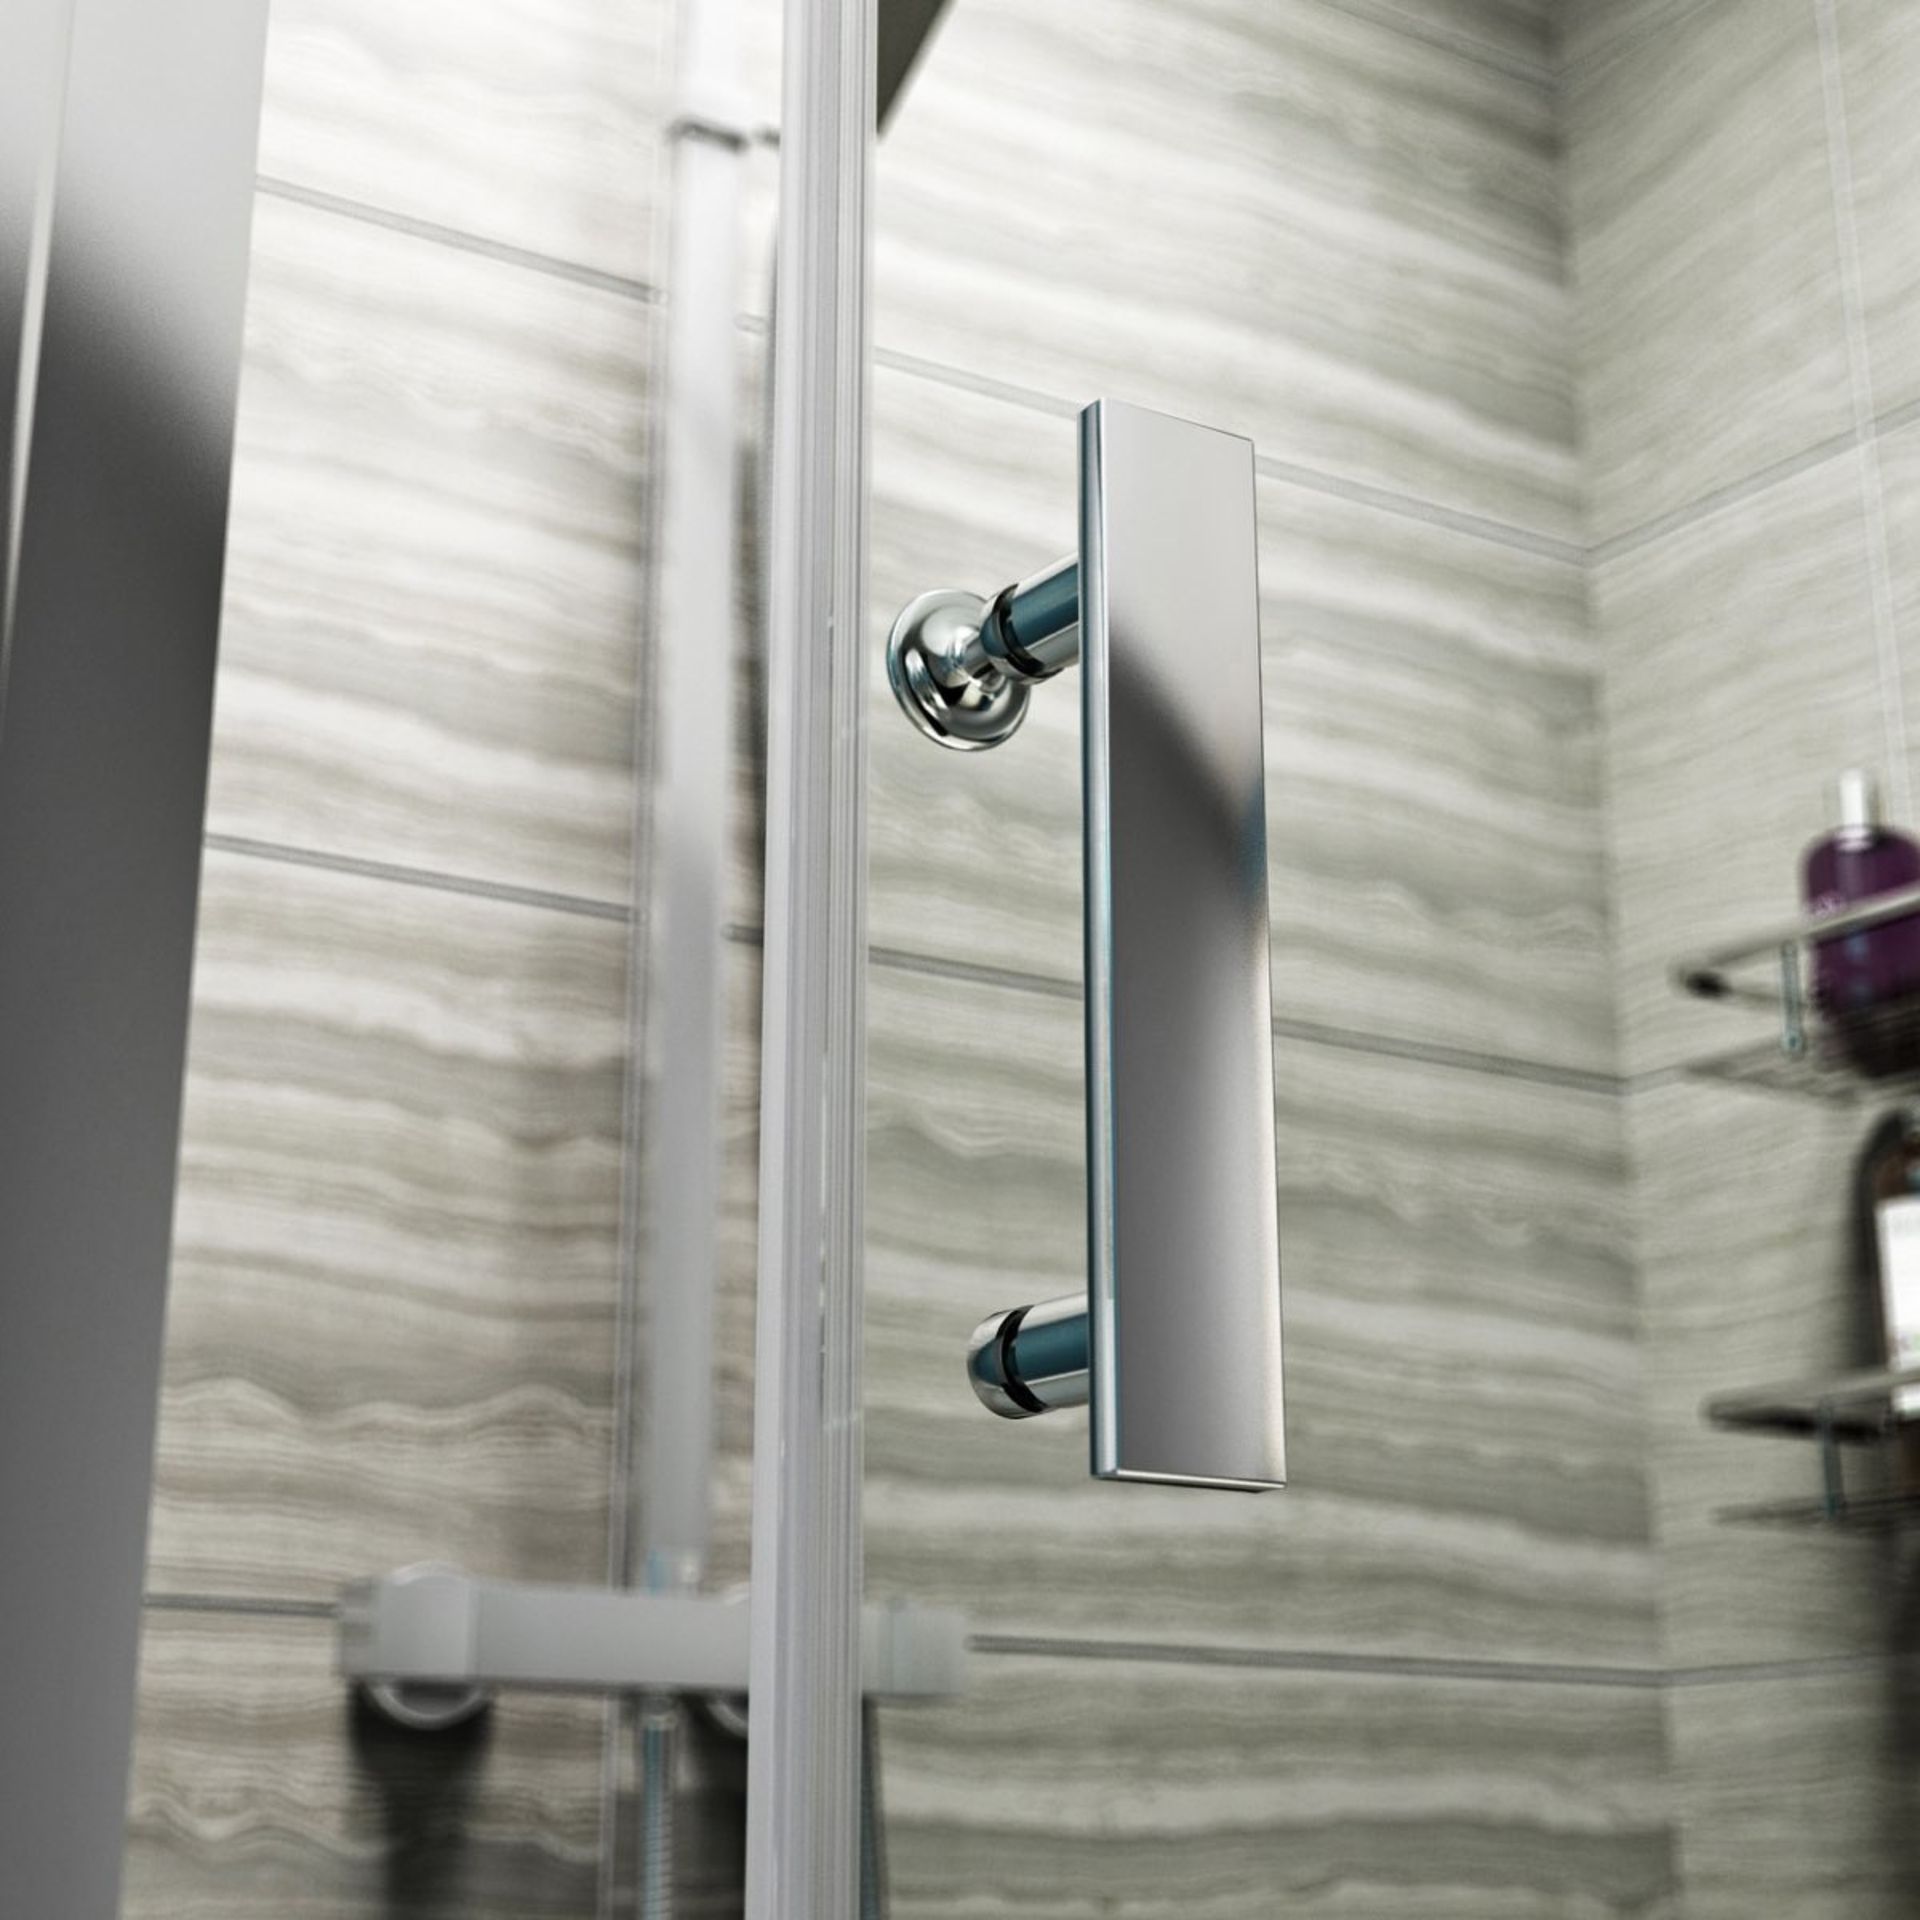 1 x 1400mm Framed Sliding Shower Door Enclosure - Includes 8mm Framed 1400mm Sliding Shower Door, - Image 8 of 9